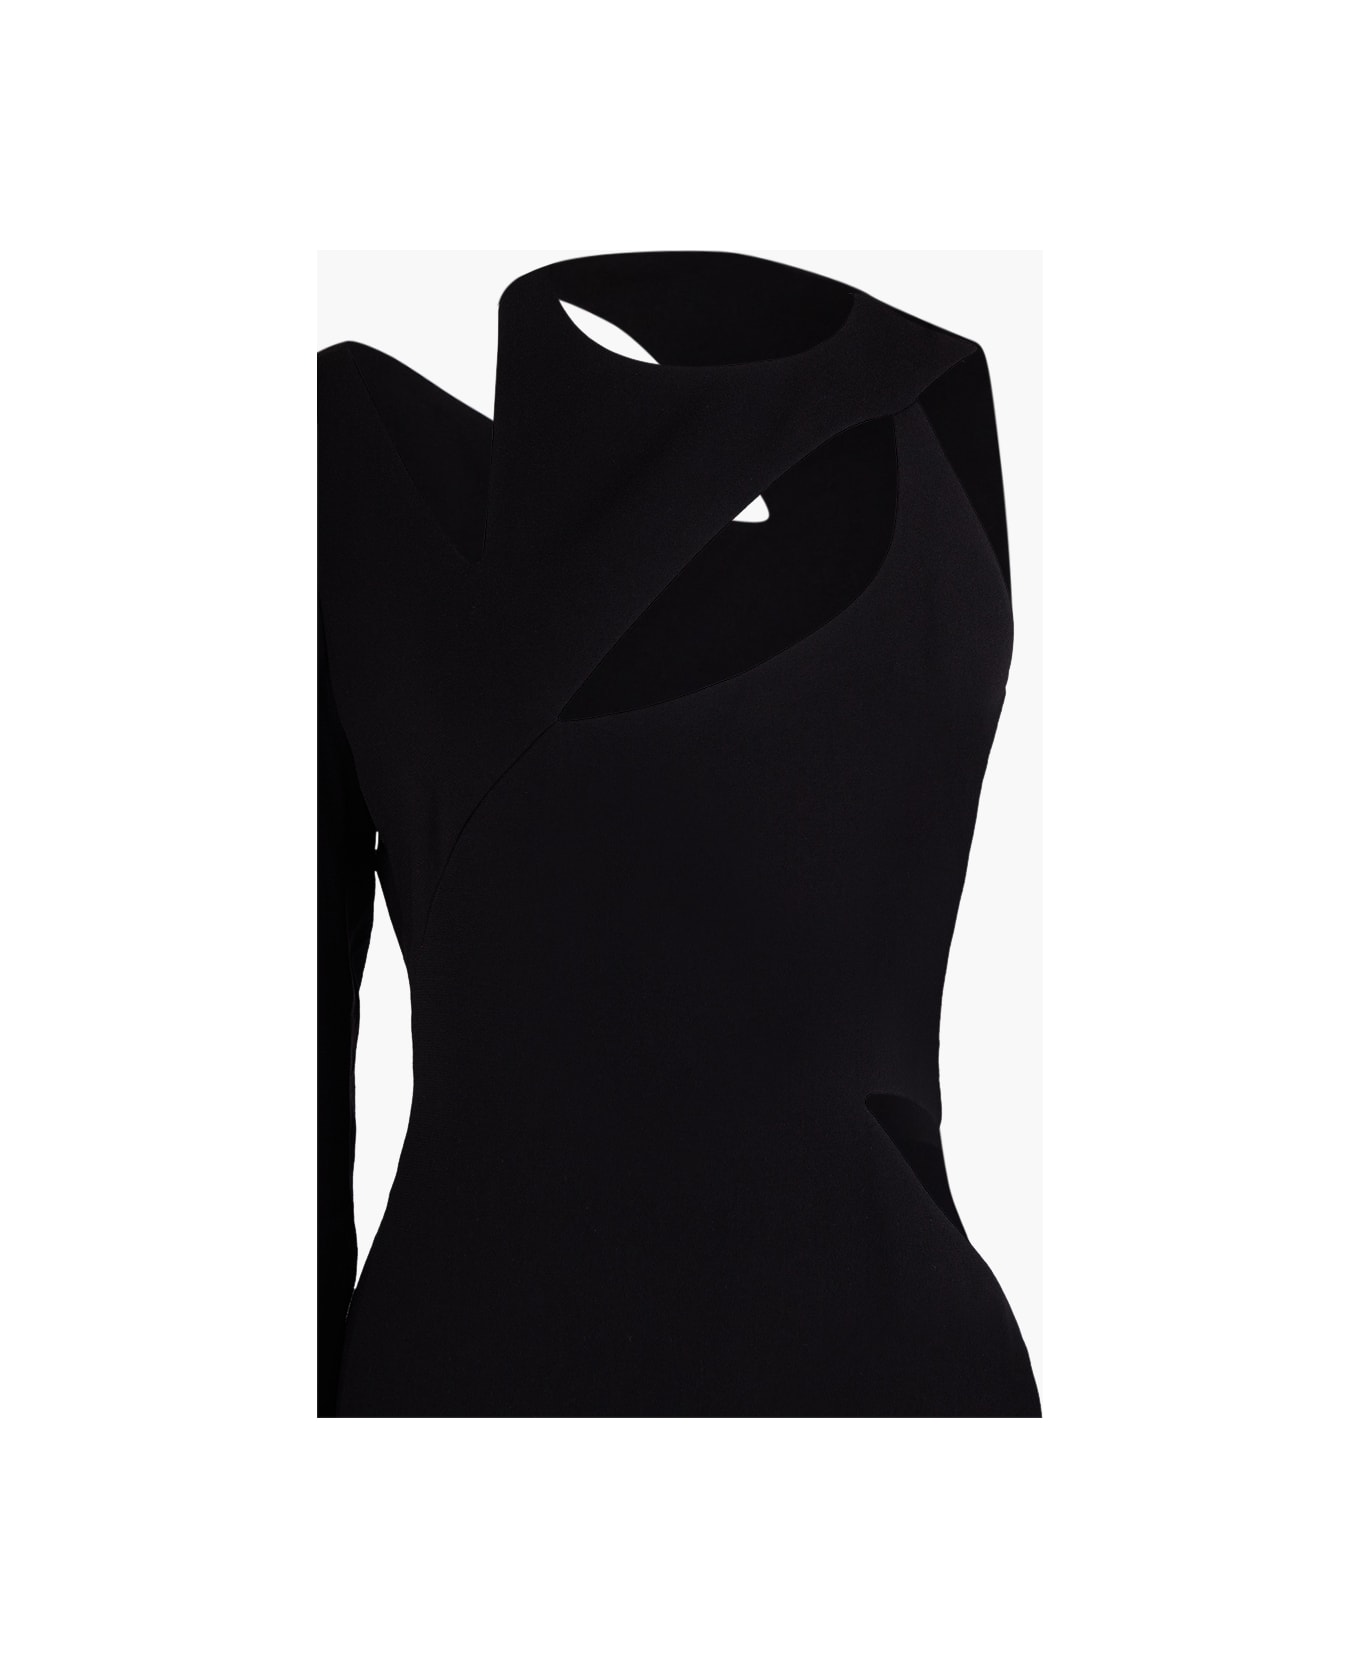 Monot One Shoulder Cut-out Long Dress - BLACK